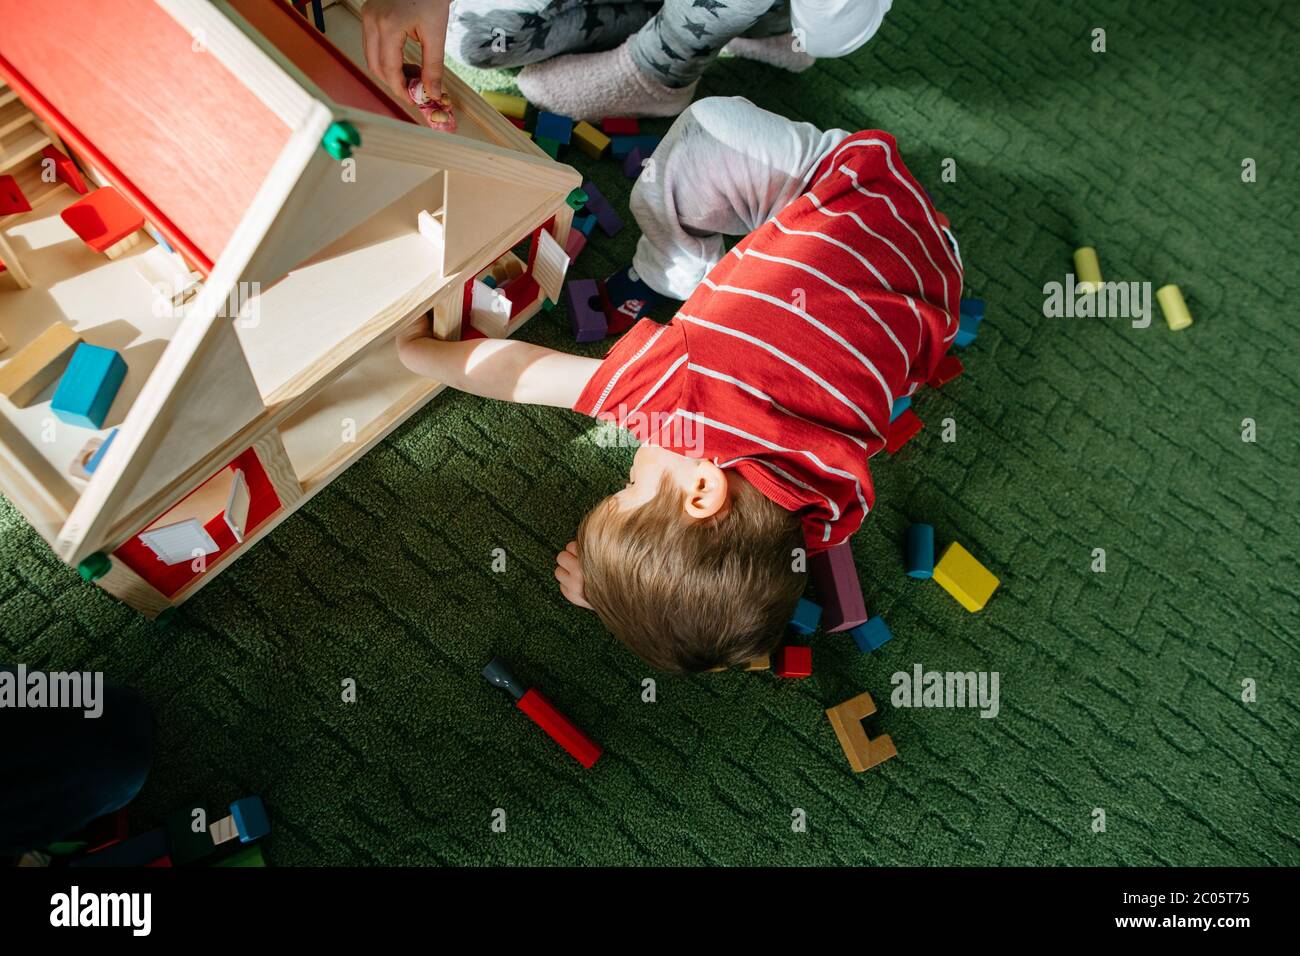 Vue en hauteur d'un enfant jouant avec une poupée en bois Banque D'Images